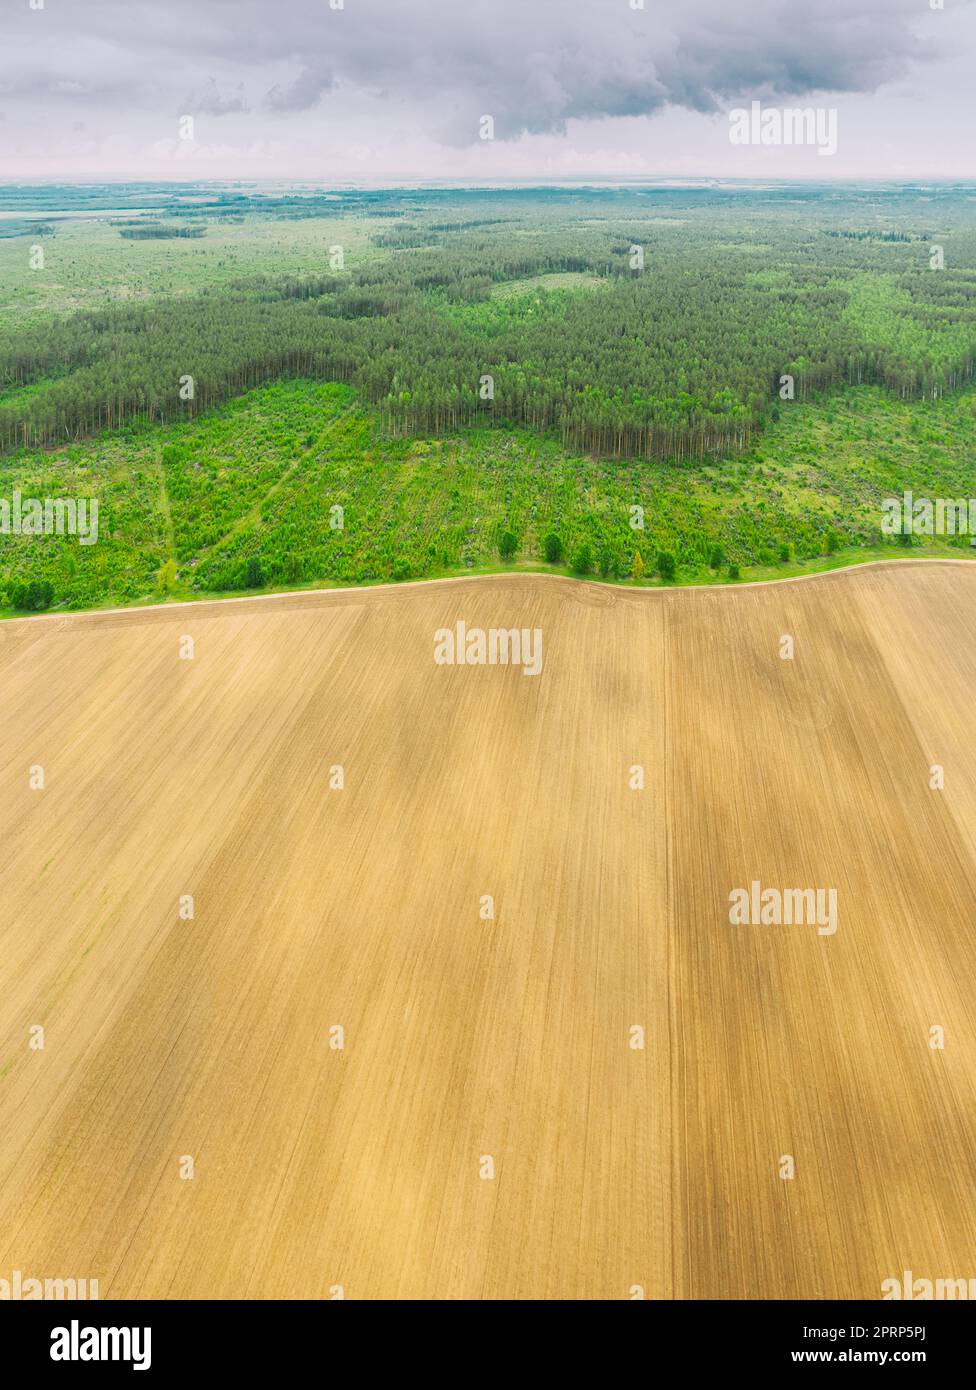 Vista aerea del paesaggio della zona di deforestazione e campo. Vista dall'alto di Field e Green Pine Forest Landscape. Deforestazione industriale su larga scala per espandere i campi agricoli Foto Stock